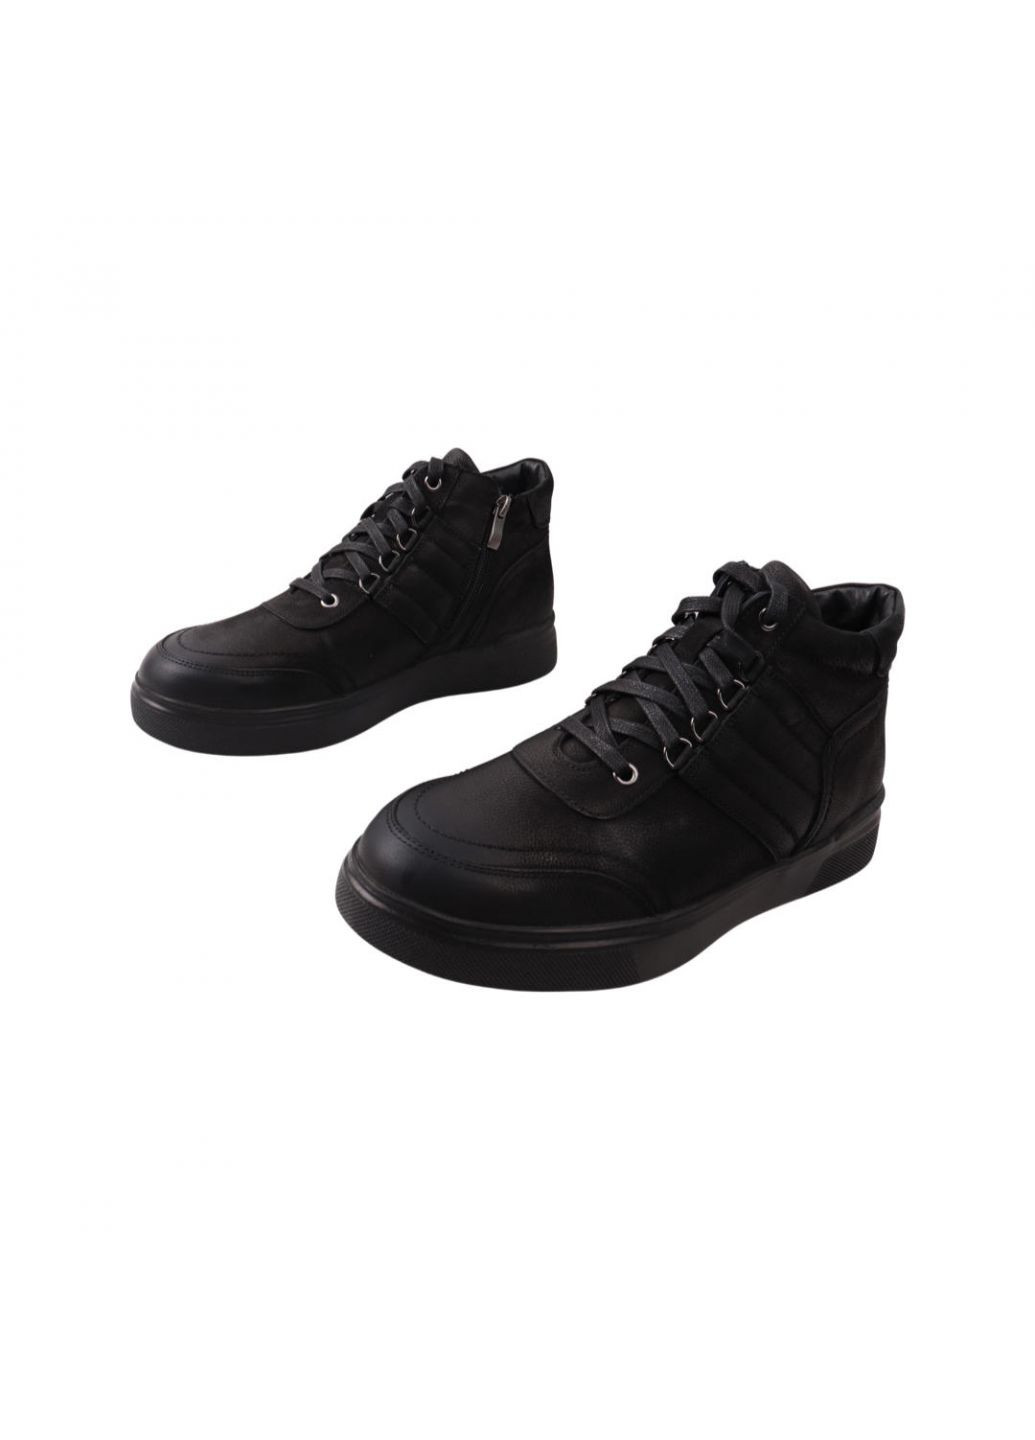 Черные ботинки мужские черные нубук Mida